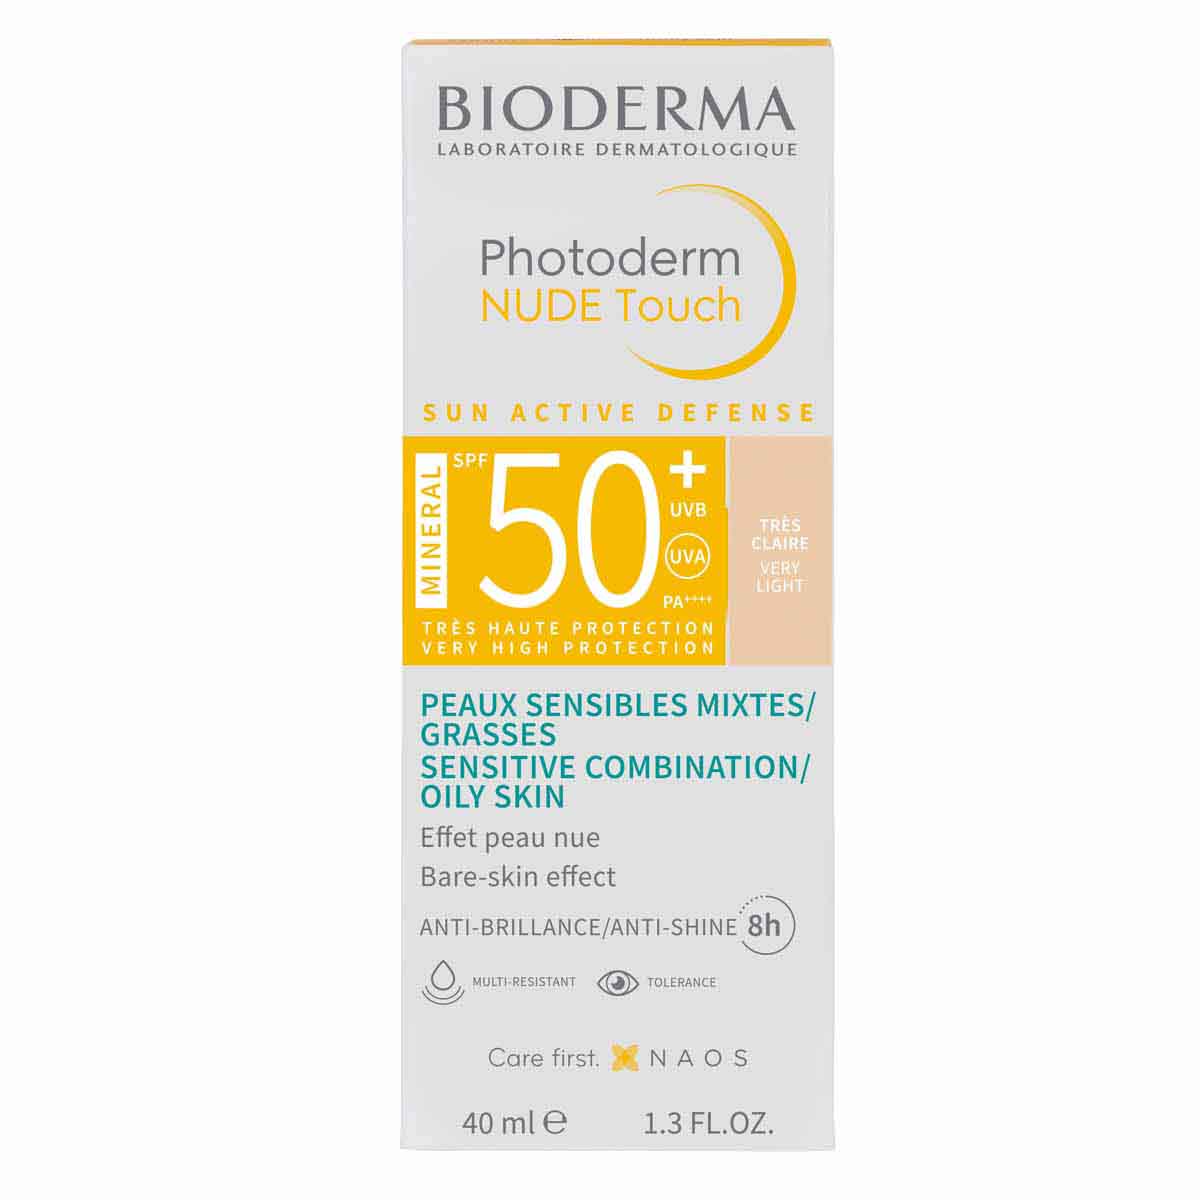 Bioderma photoderm nude touch FPS 50+ tono muy claro protección solar facial 40ml.